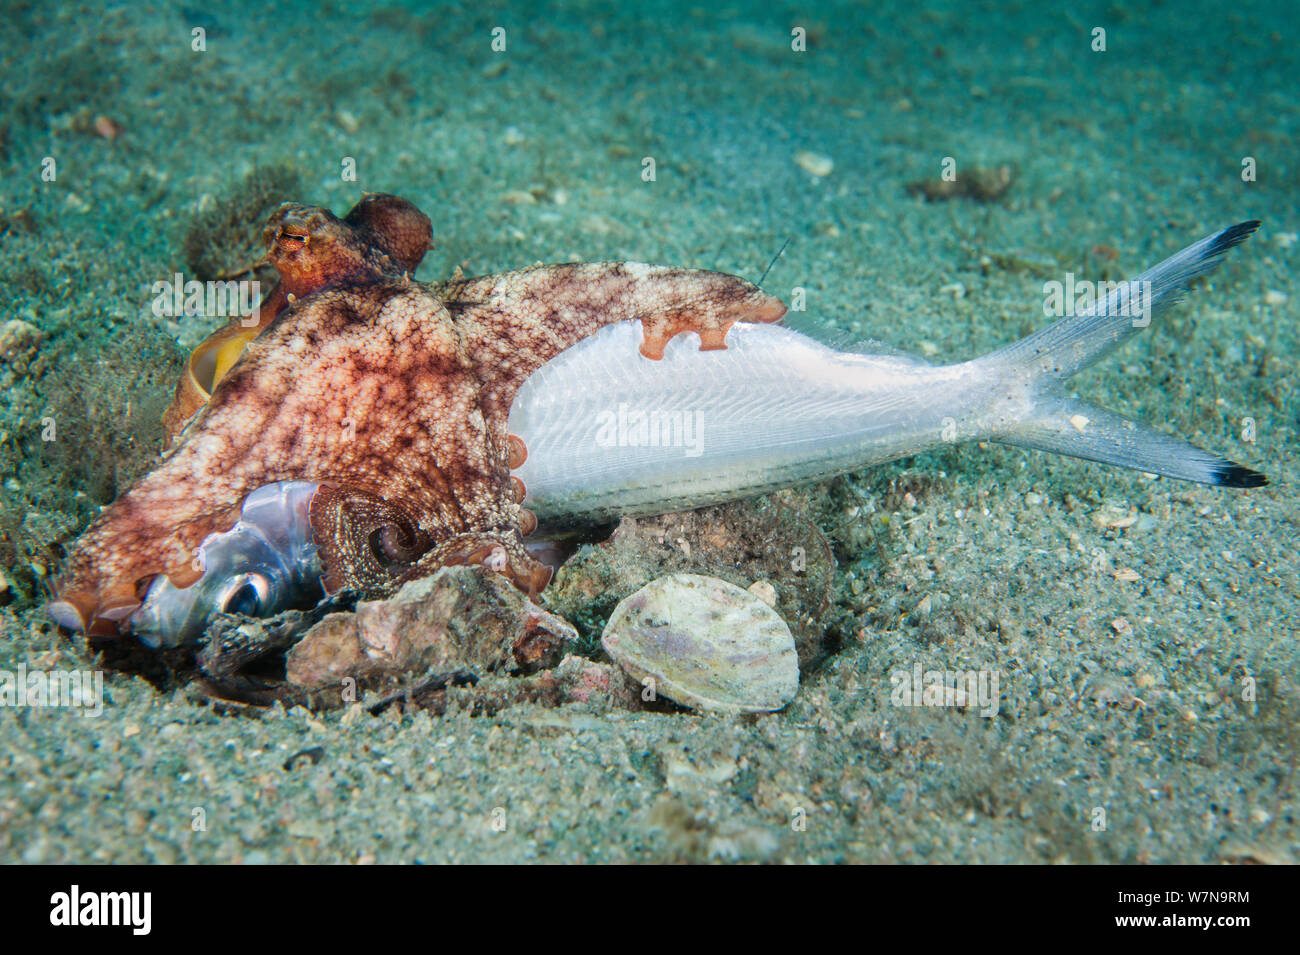 Un poulpe commun (Octopus vulgaris) récupère un poisson mort, en le faisant glisser jusqu'à son terrier. West Palm Beach, Florida, USA Banque D'Images